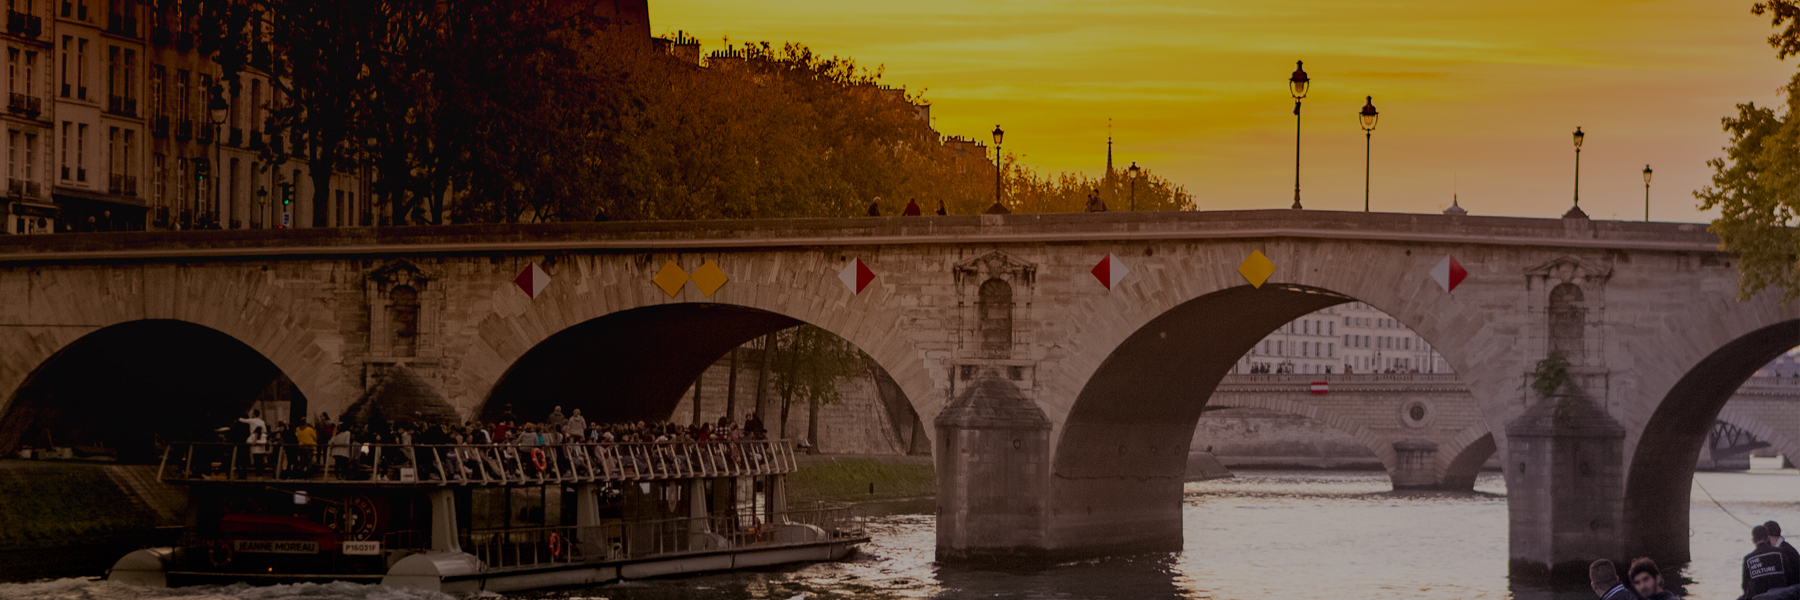 Sunset river cruise in Paris